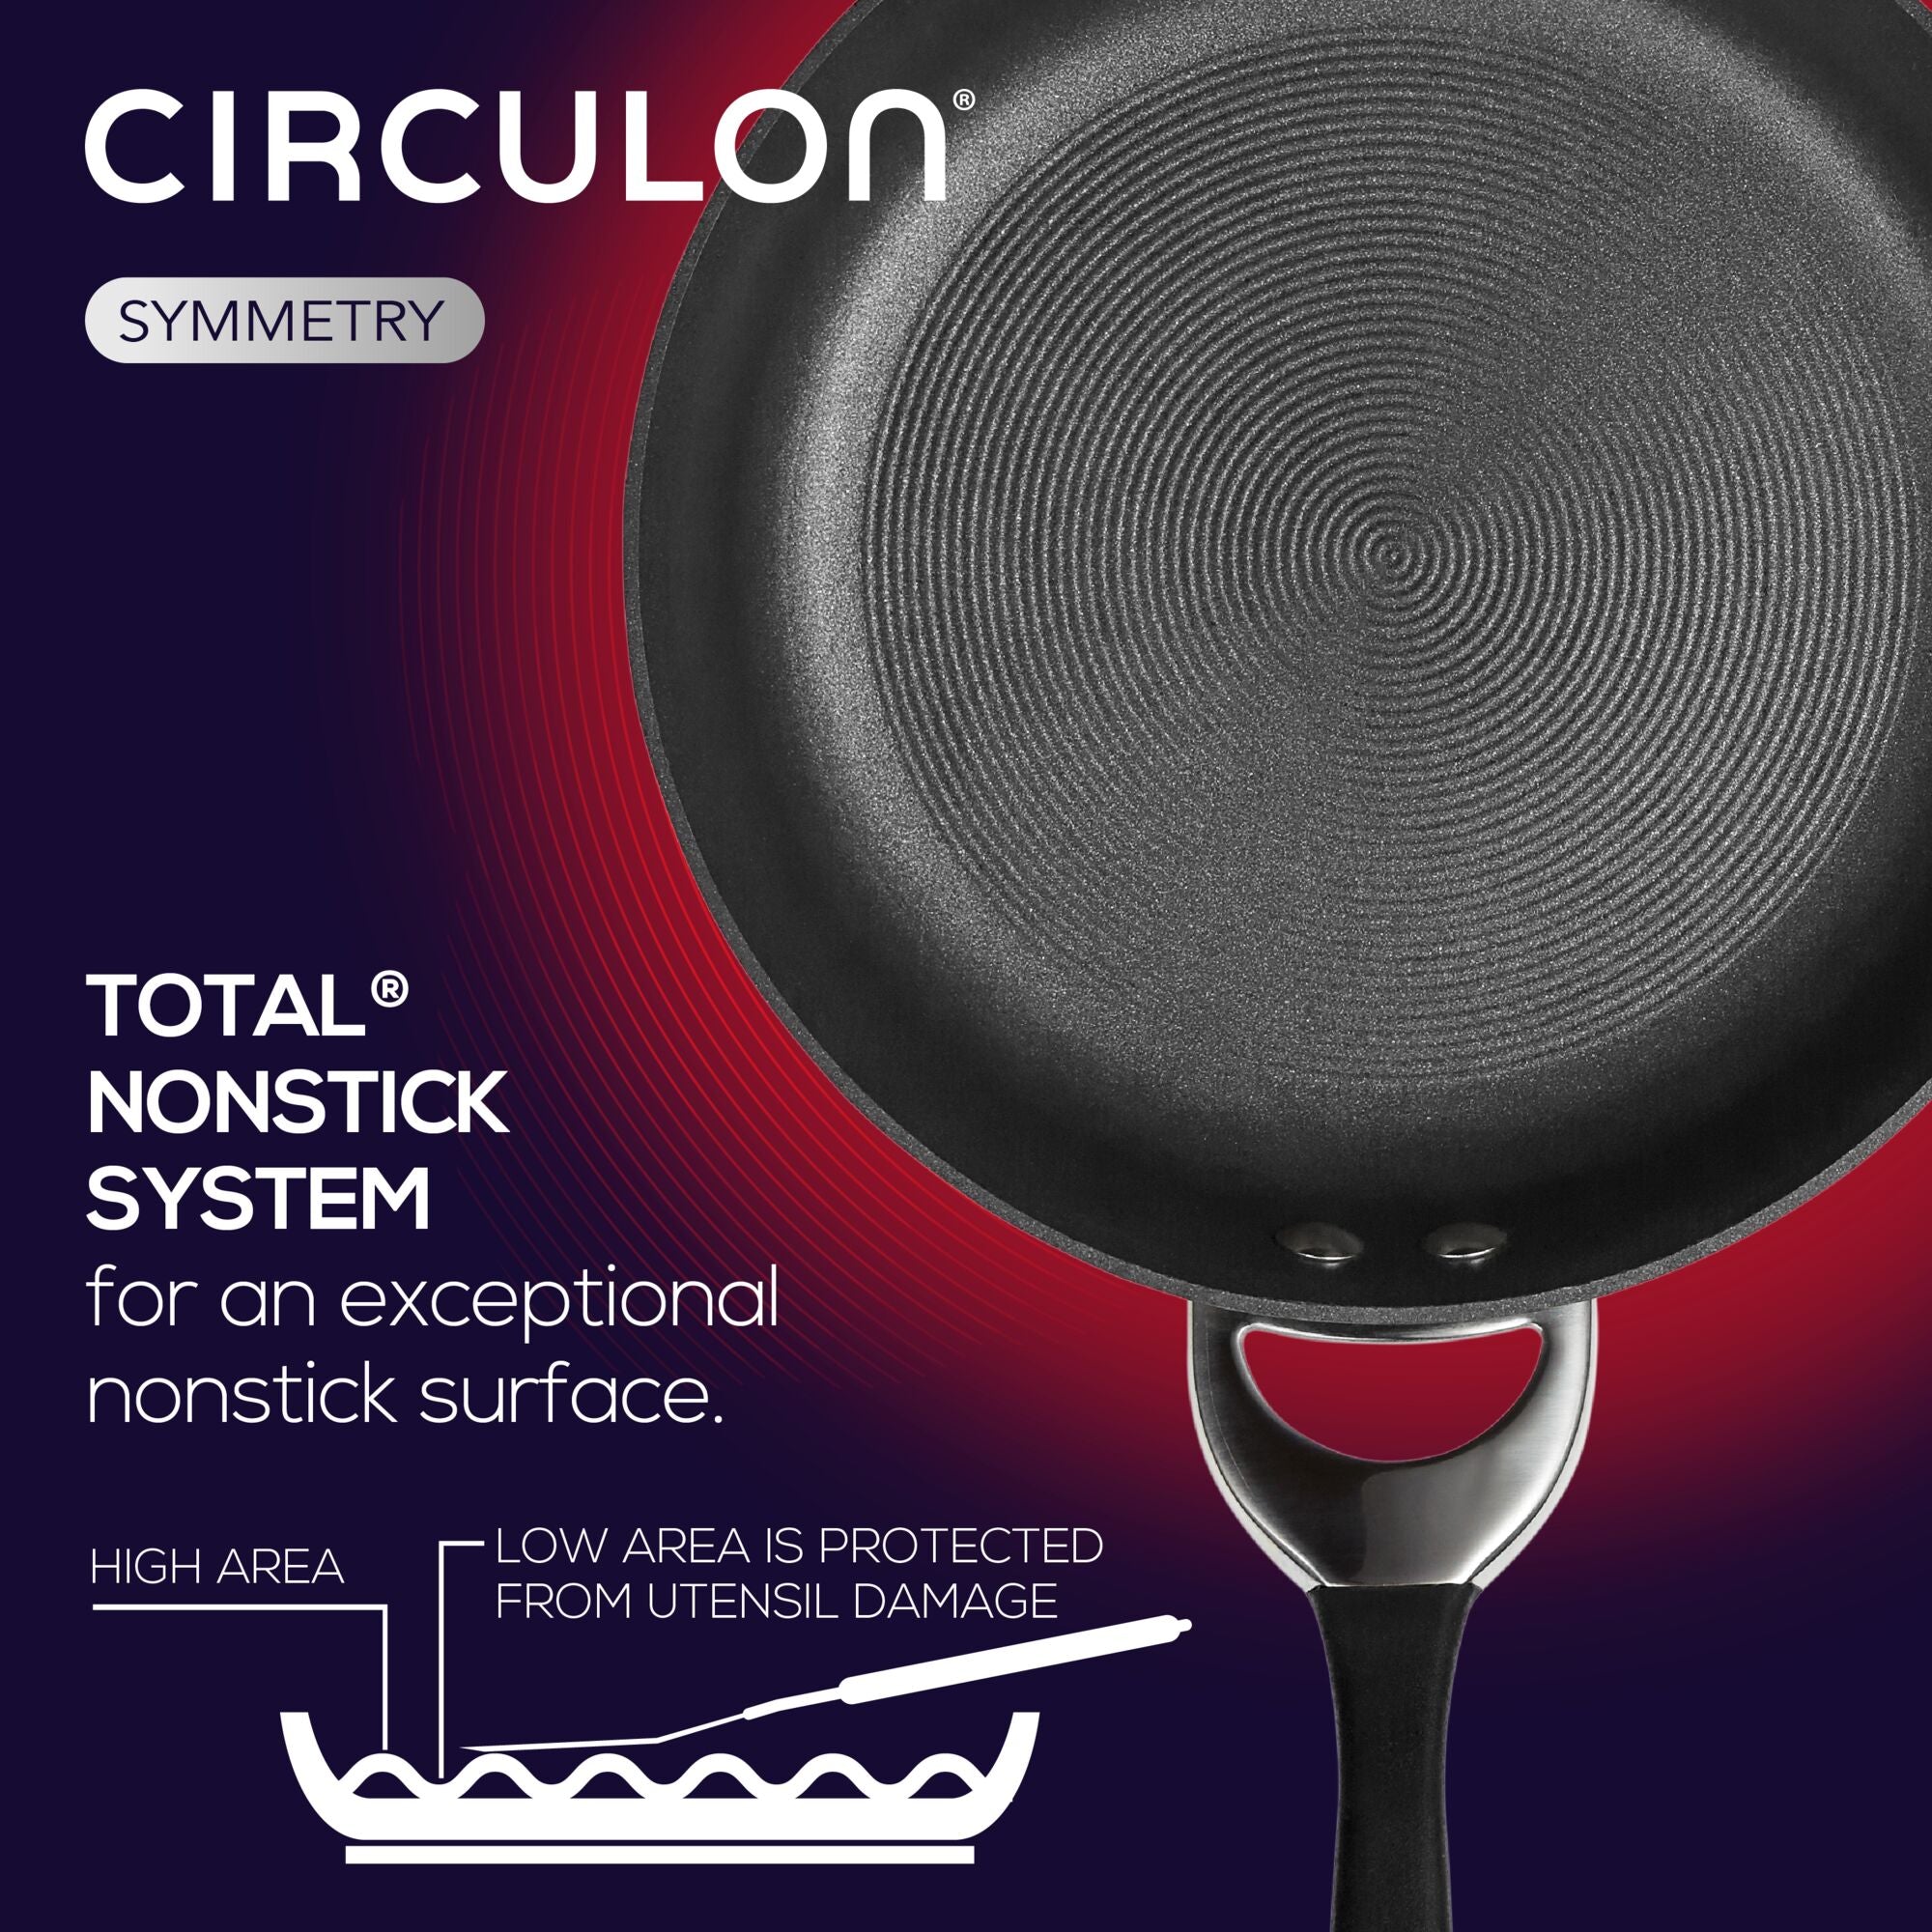 Circulon Pot + Pan Set 10-Pcs Hard-Anodized Aluminum Nonstick